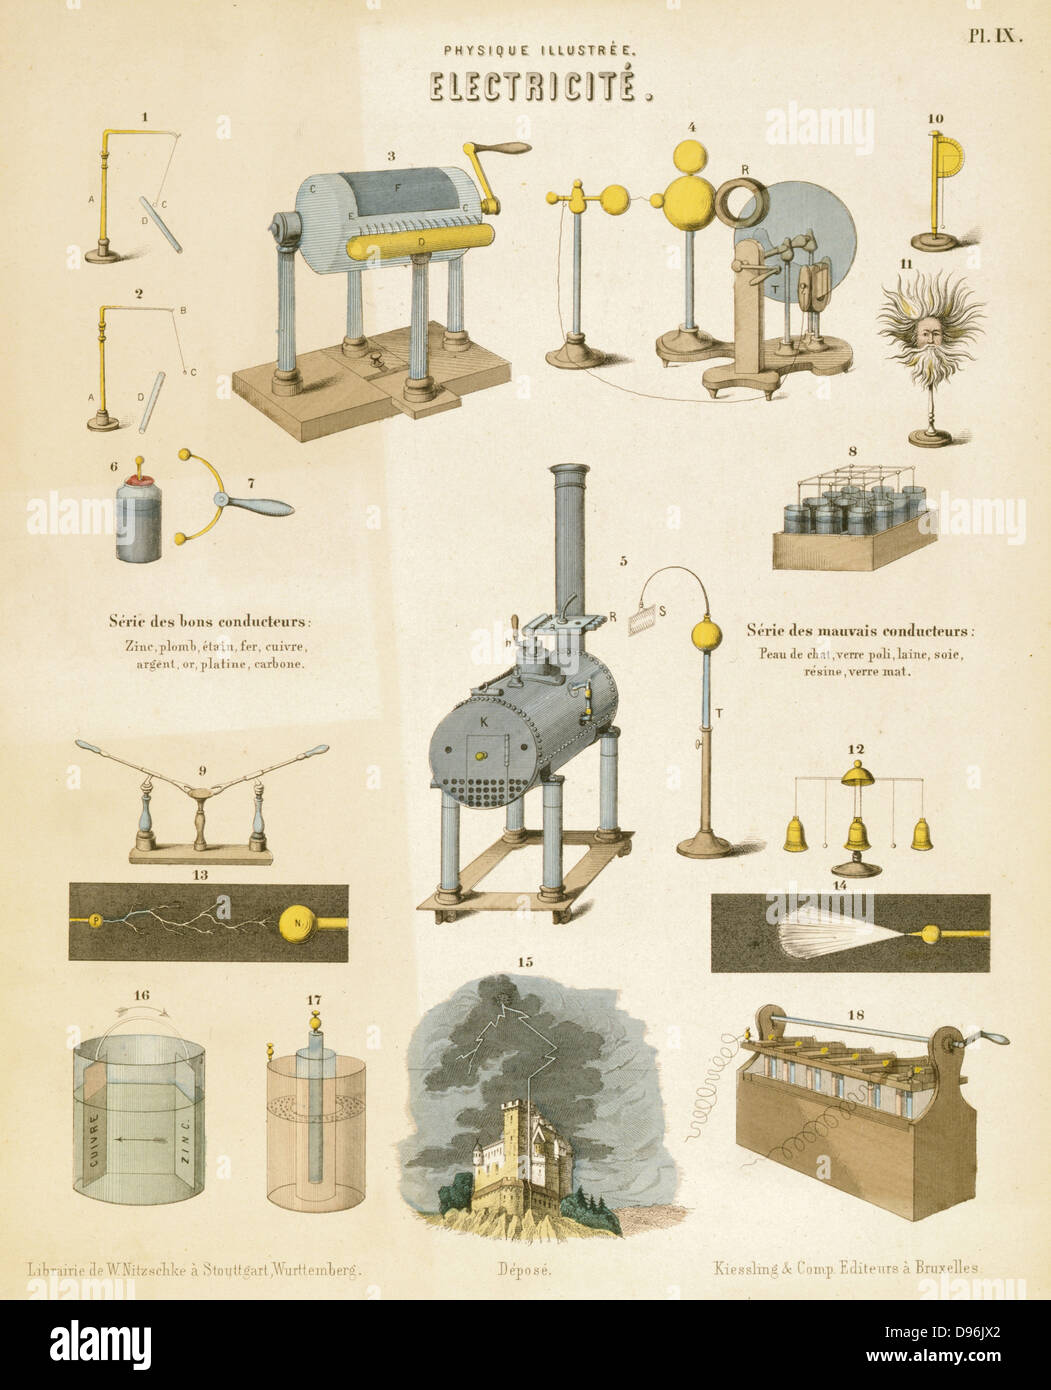 Strom: Pädagogische Platte veröffentlicht Württemberg c 1850. Anziehung und Abstoßung (1&2), Leyden jar & Kondensator (6&7), Armstrong's Wasserkraft Maschine (5), Batterien, Beleuchtung, etc. Stockfoto